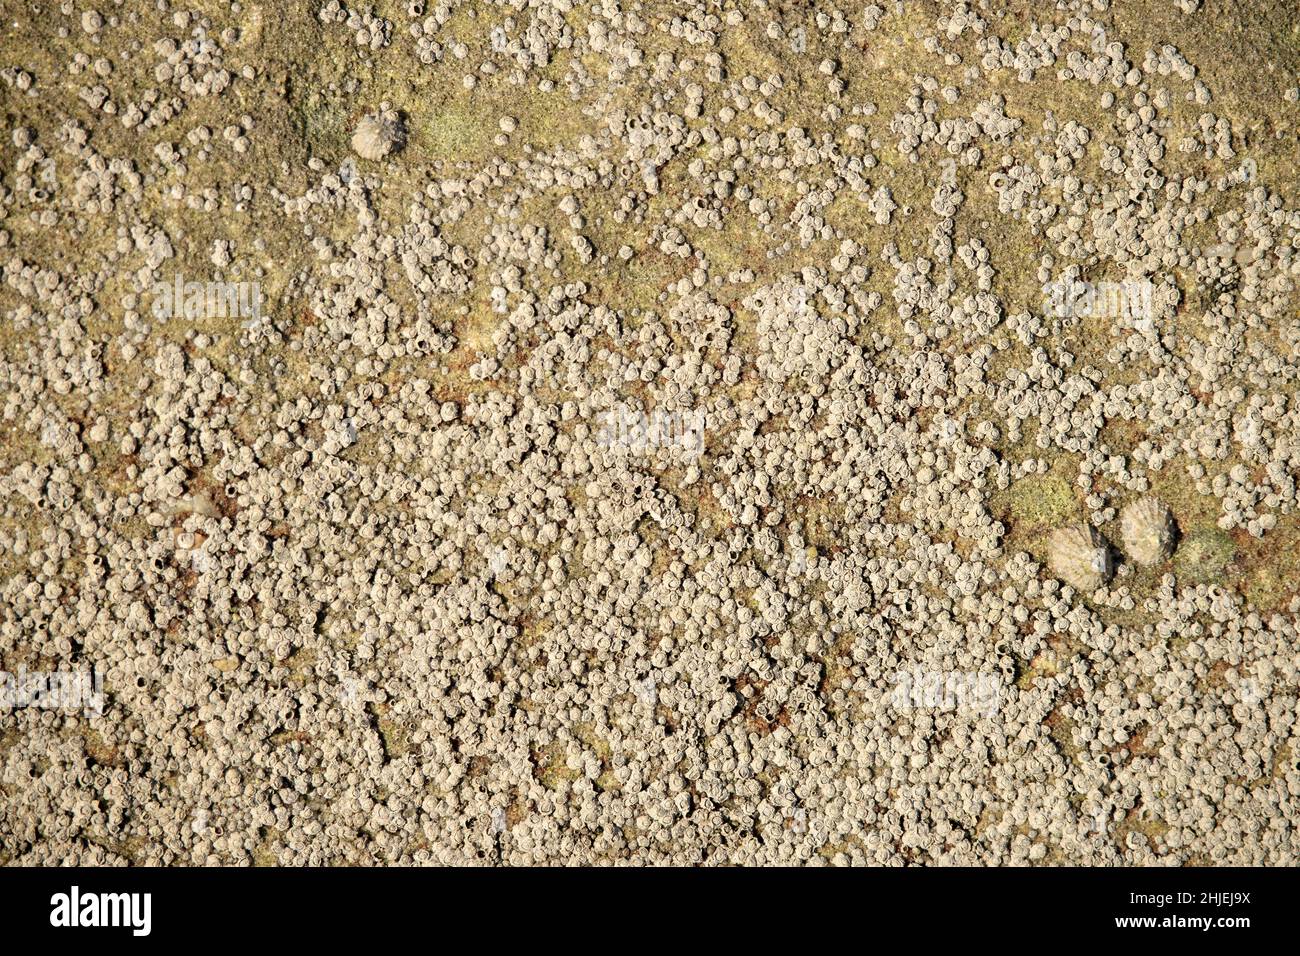 Acorn-Seepocken sind untypische Mitglieder der Krustentiere. Sie sind spezialisiert auf das Leben auf exponierten Oberflächen in der Gezeitenzone, eine harte und anspruchsvolle Stockfoto